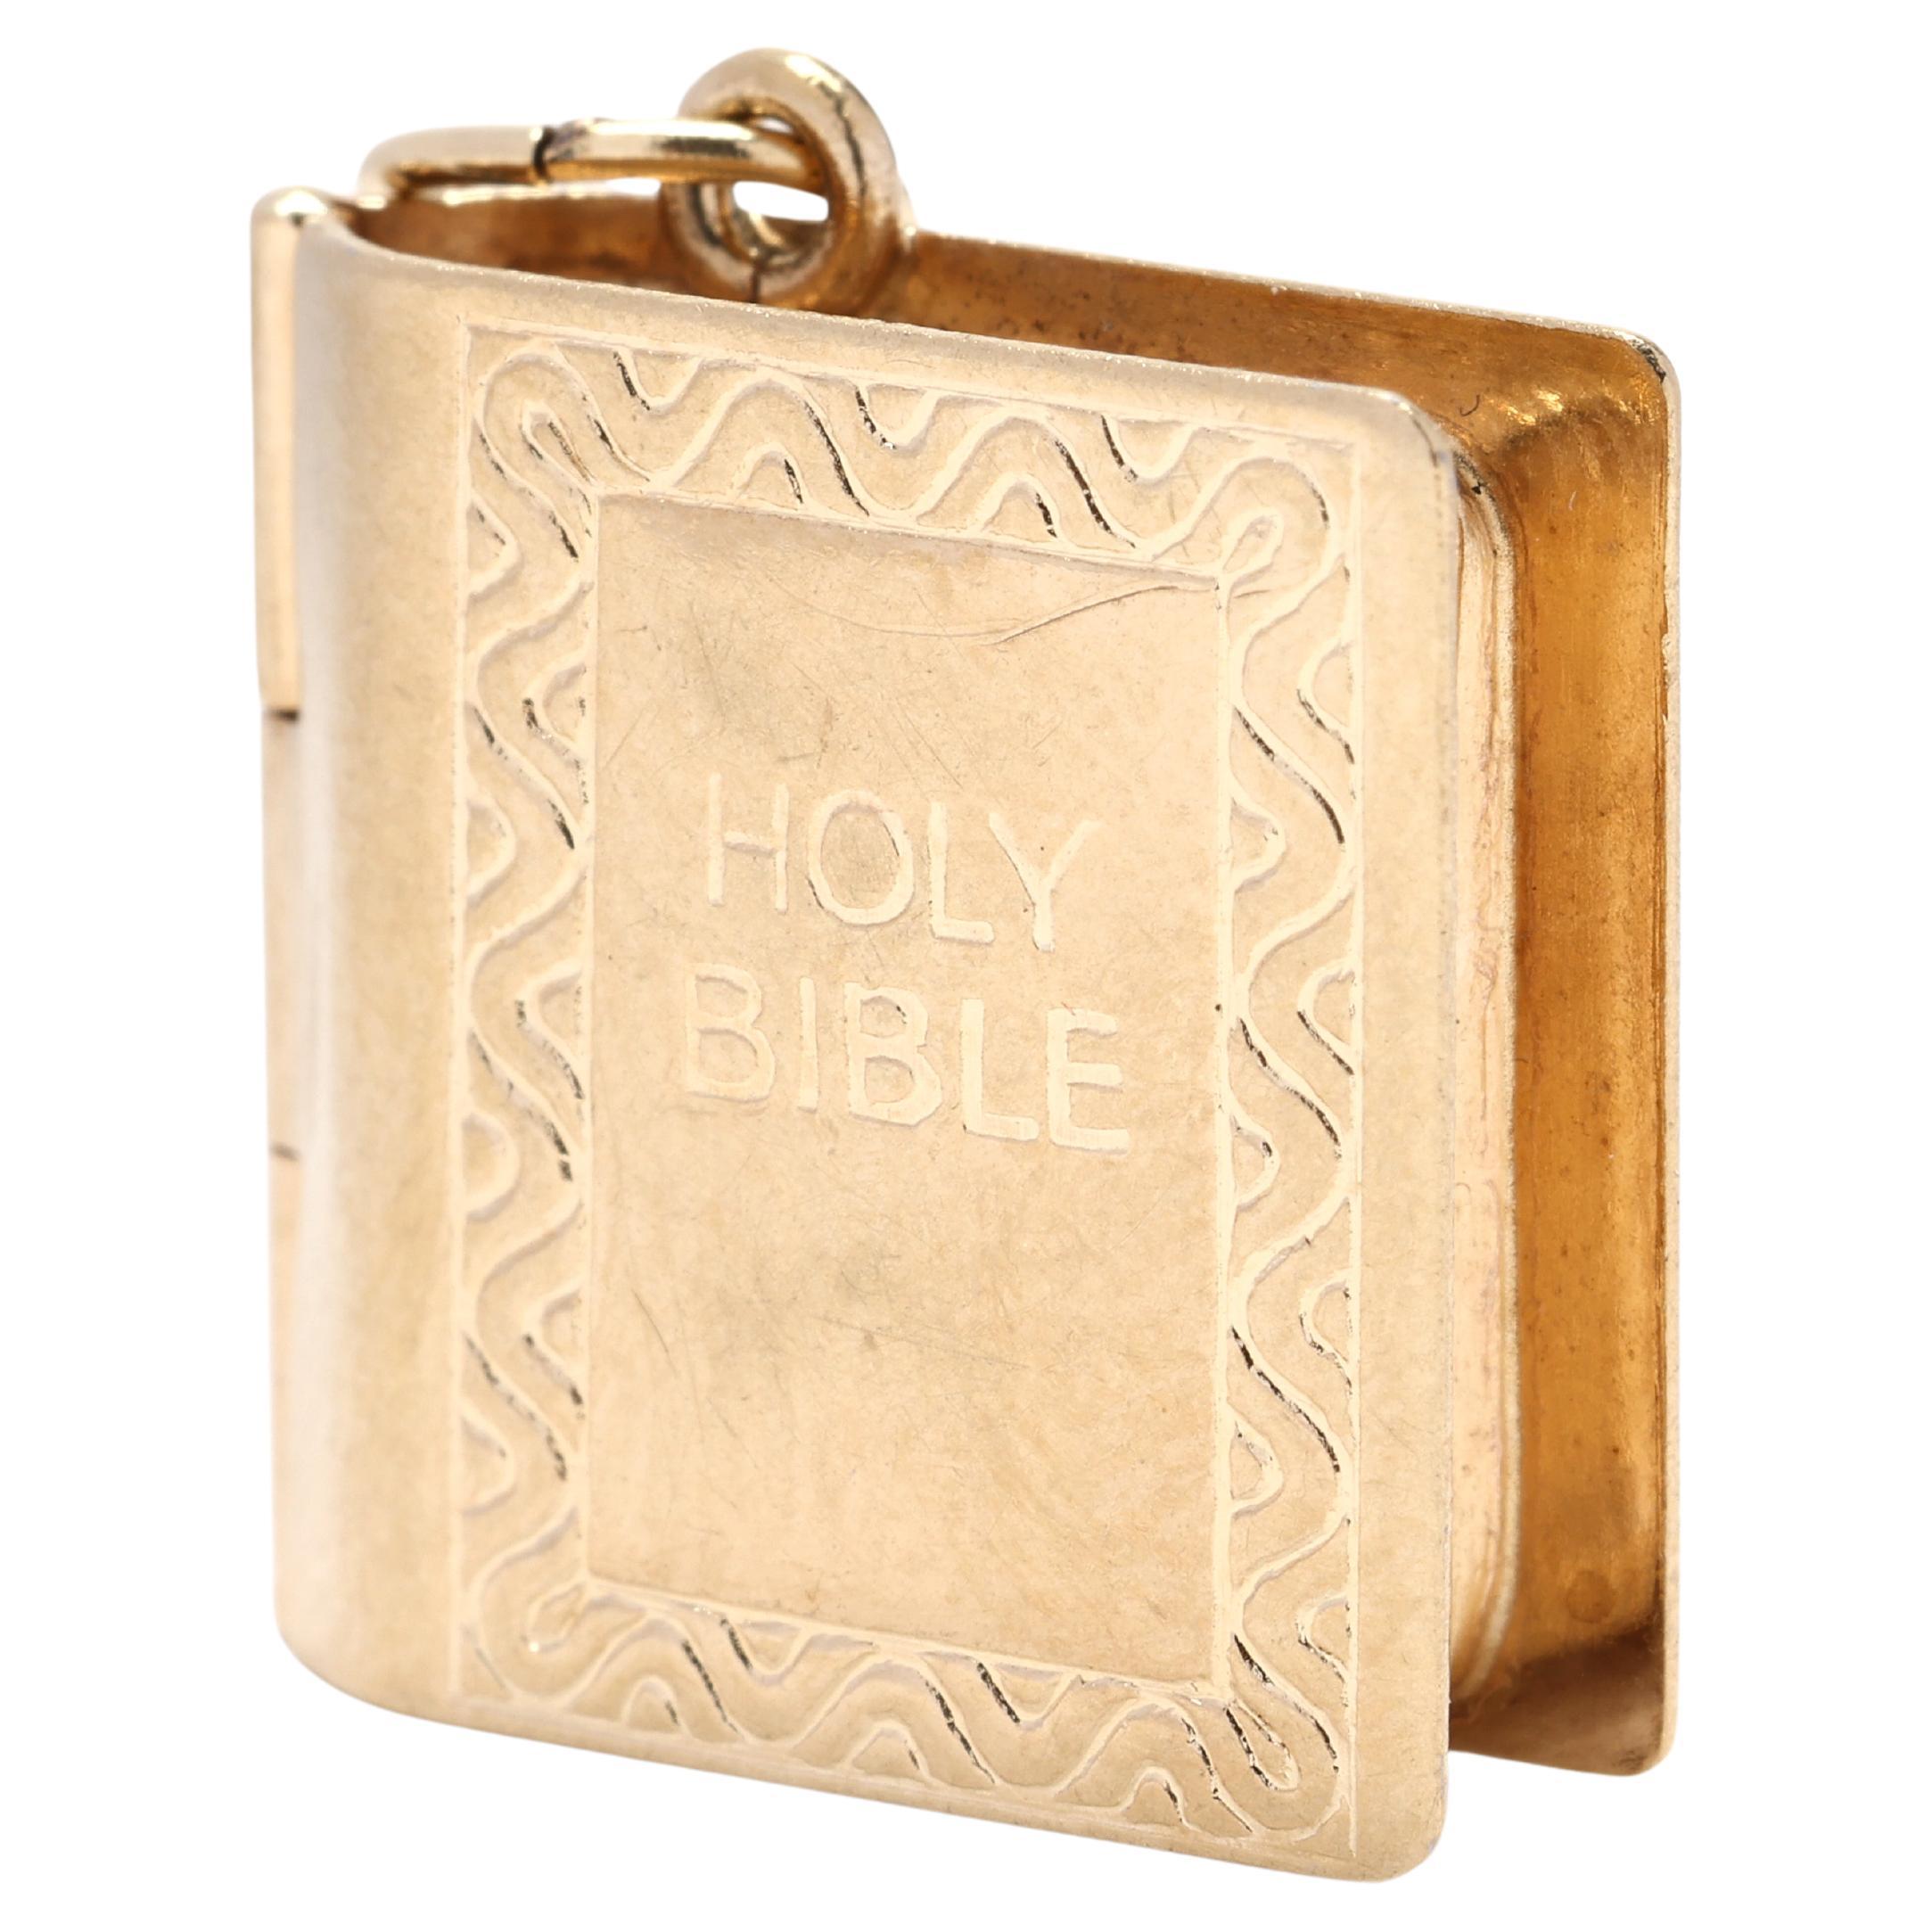 Médaillon de la Bible en or jaune 9 carats, papier du Testament ancien à l'intérieur, médaillon à breloque gravé